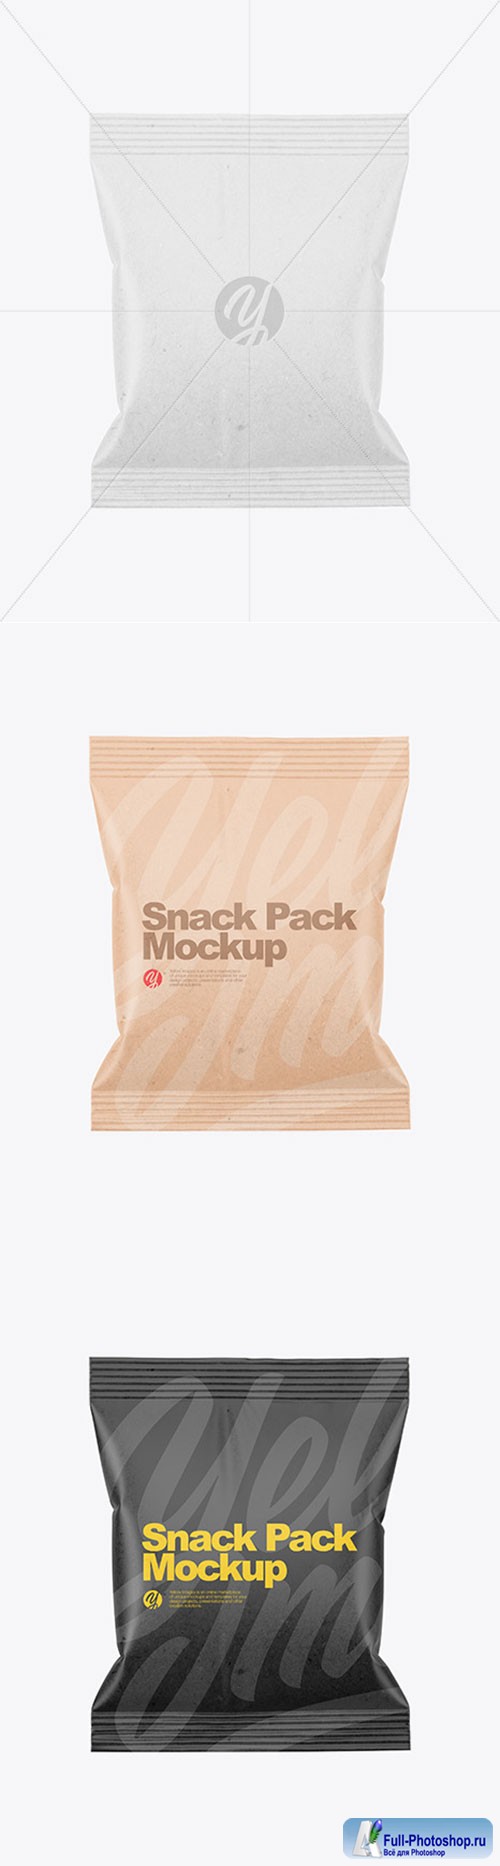 Craft Snack Pack Mockup 86506